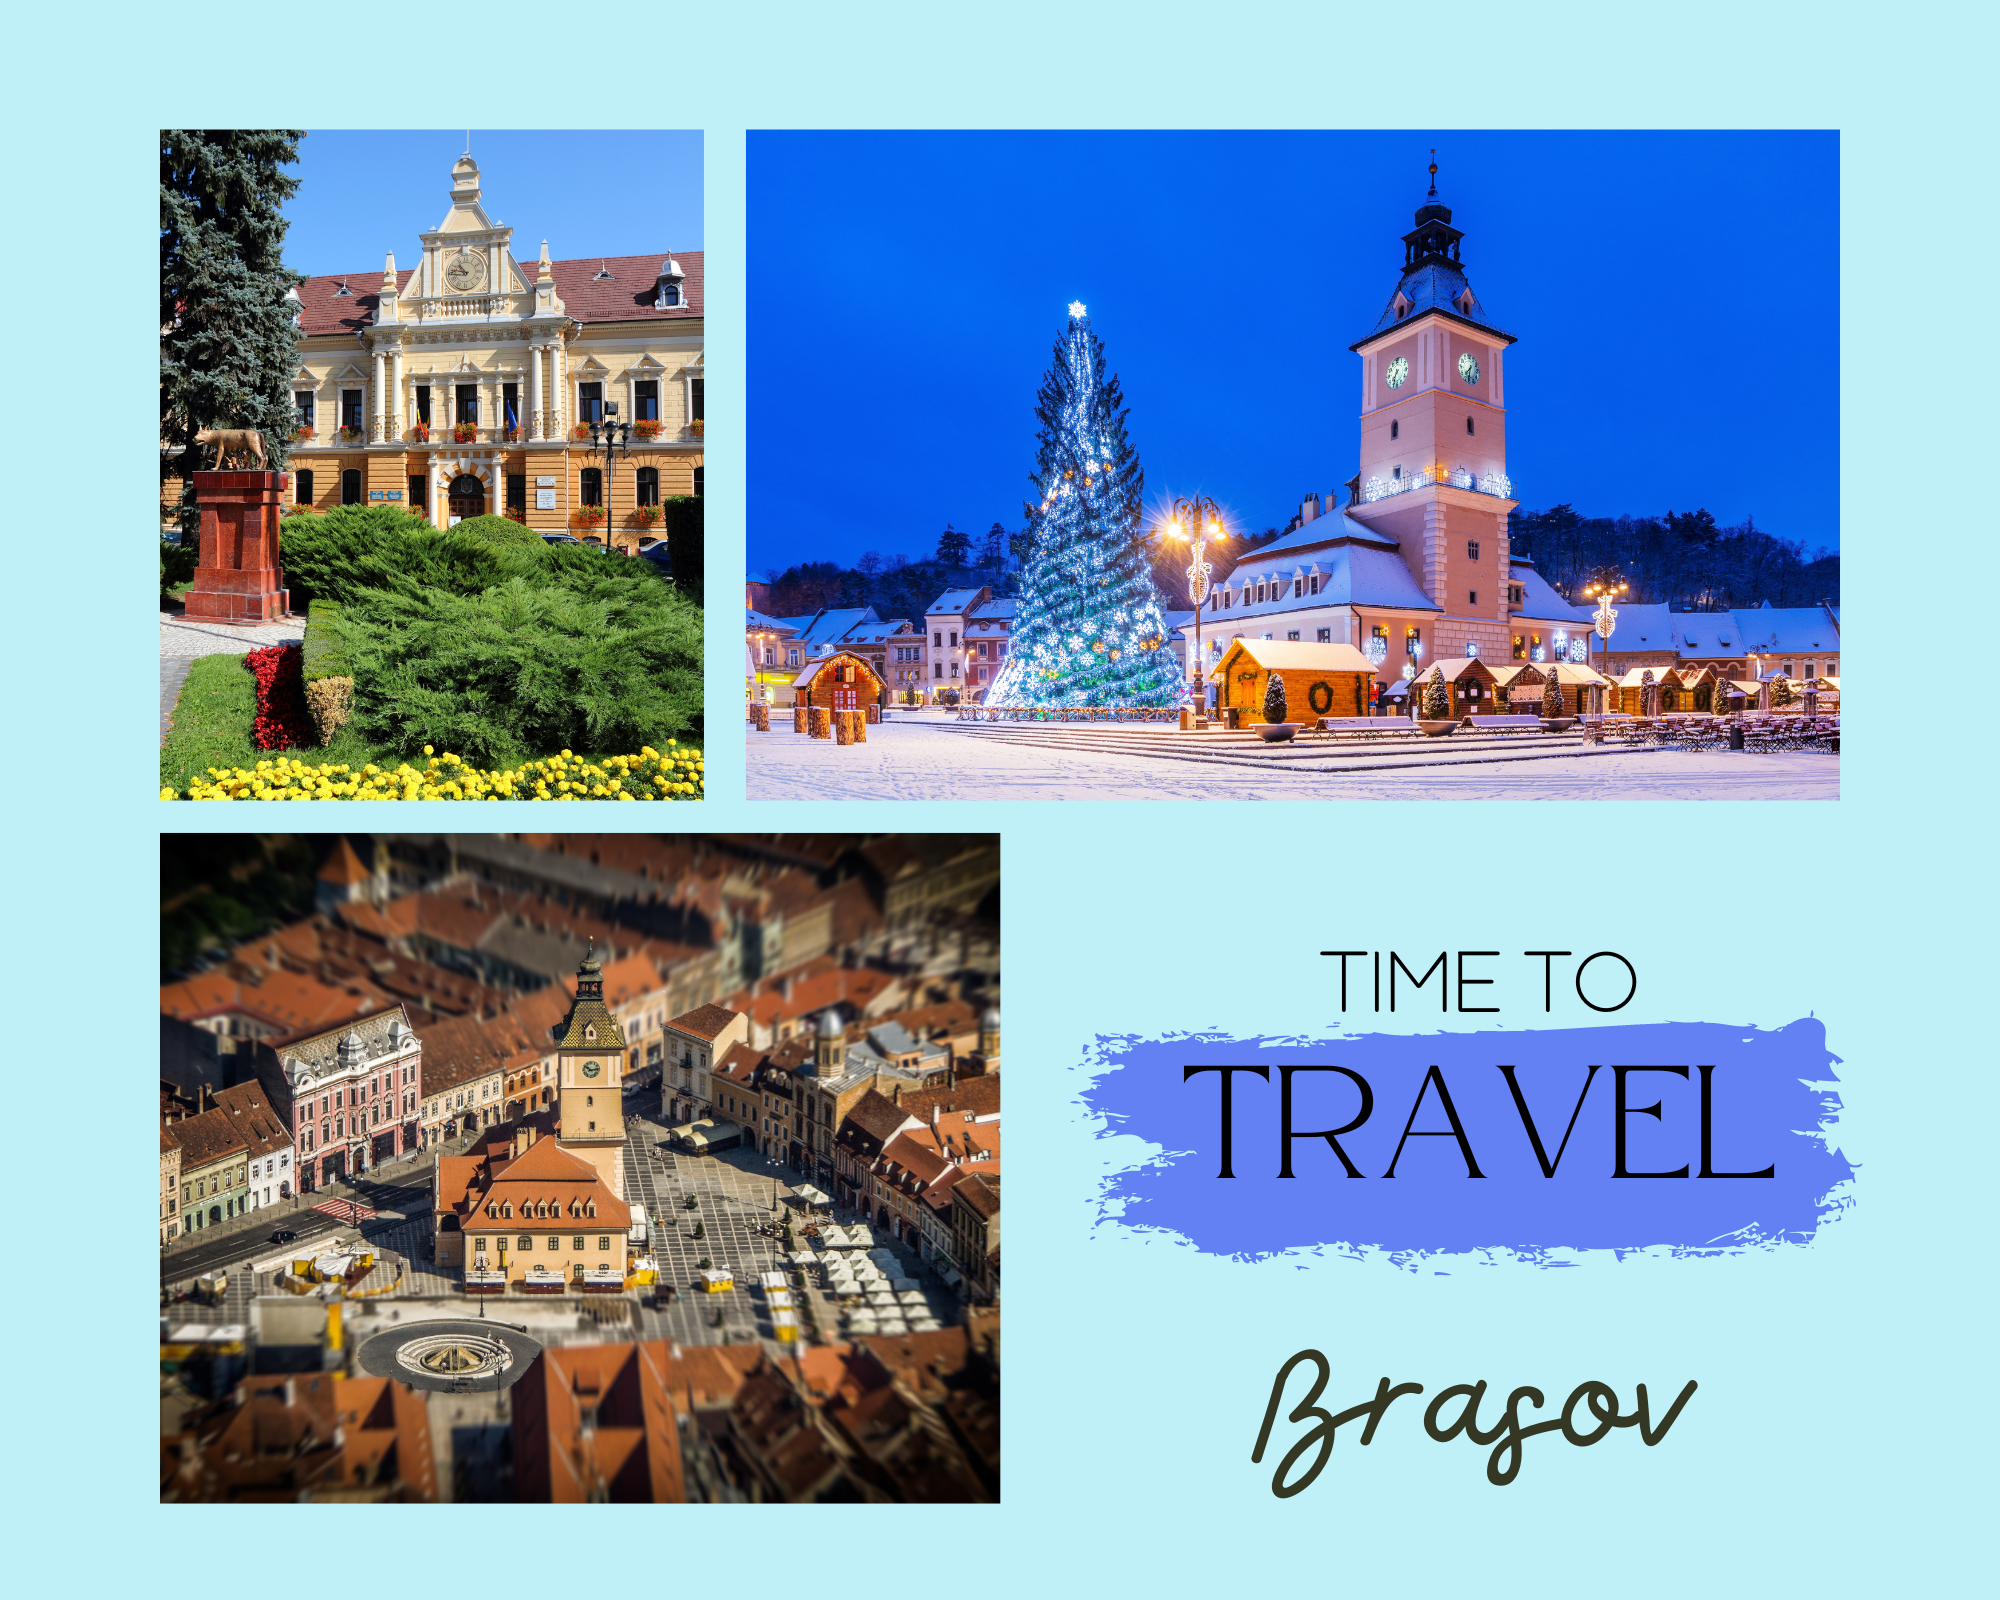 Travel Brasov